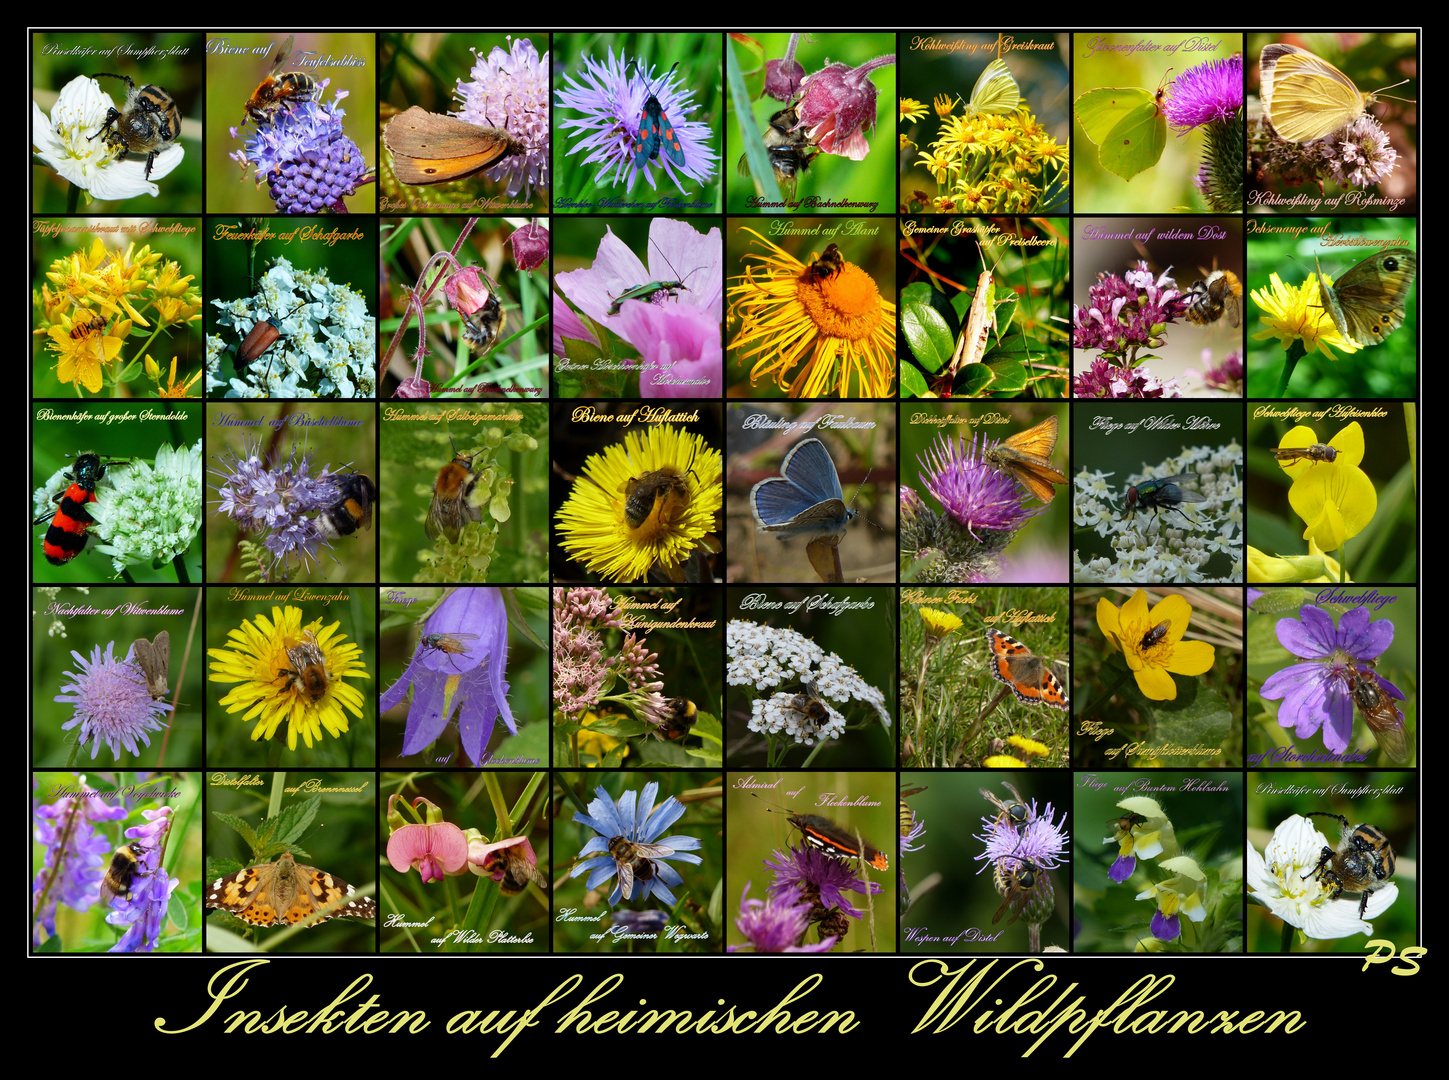 Insektenvielfalt in Deutschland